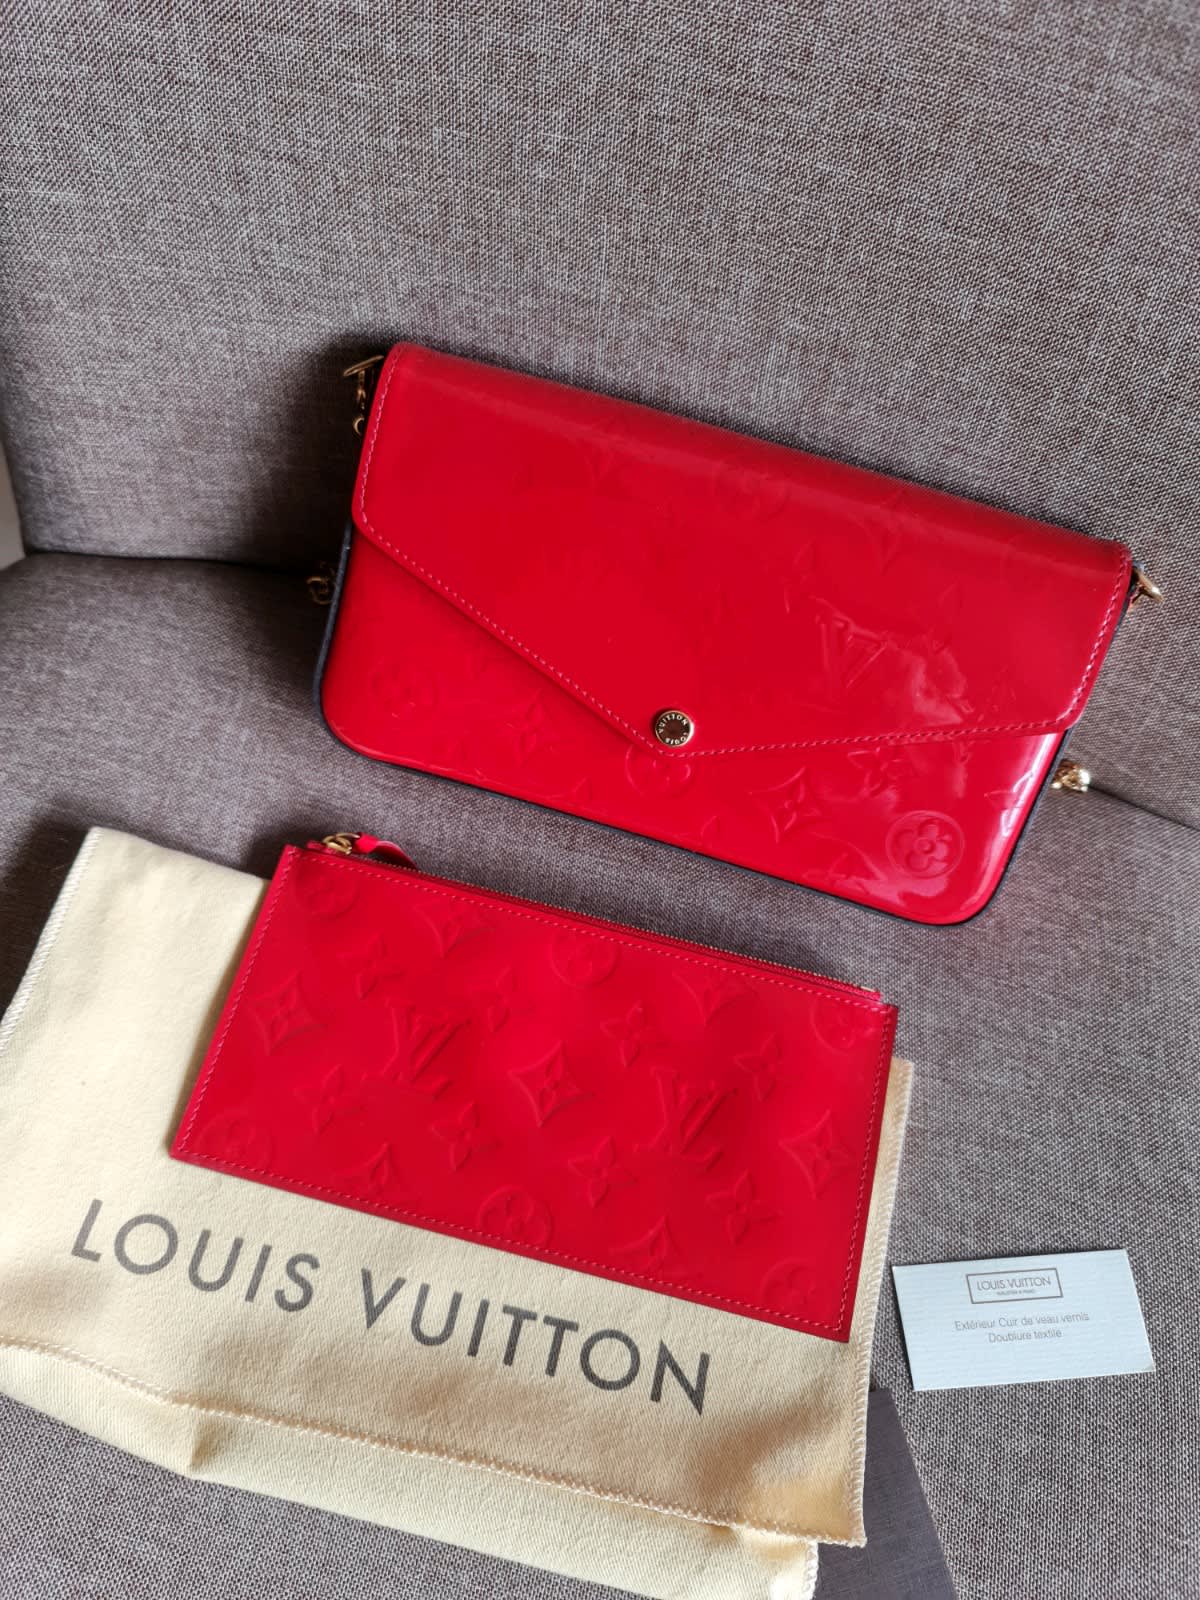 LV Louis Vuitton belt 100% authentic - Men's Clothing & Shoes - Perth,  Western Australia, Facebook Marketplace